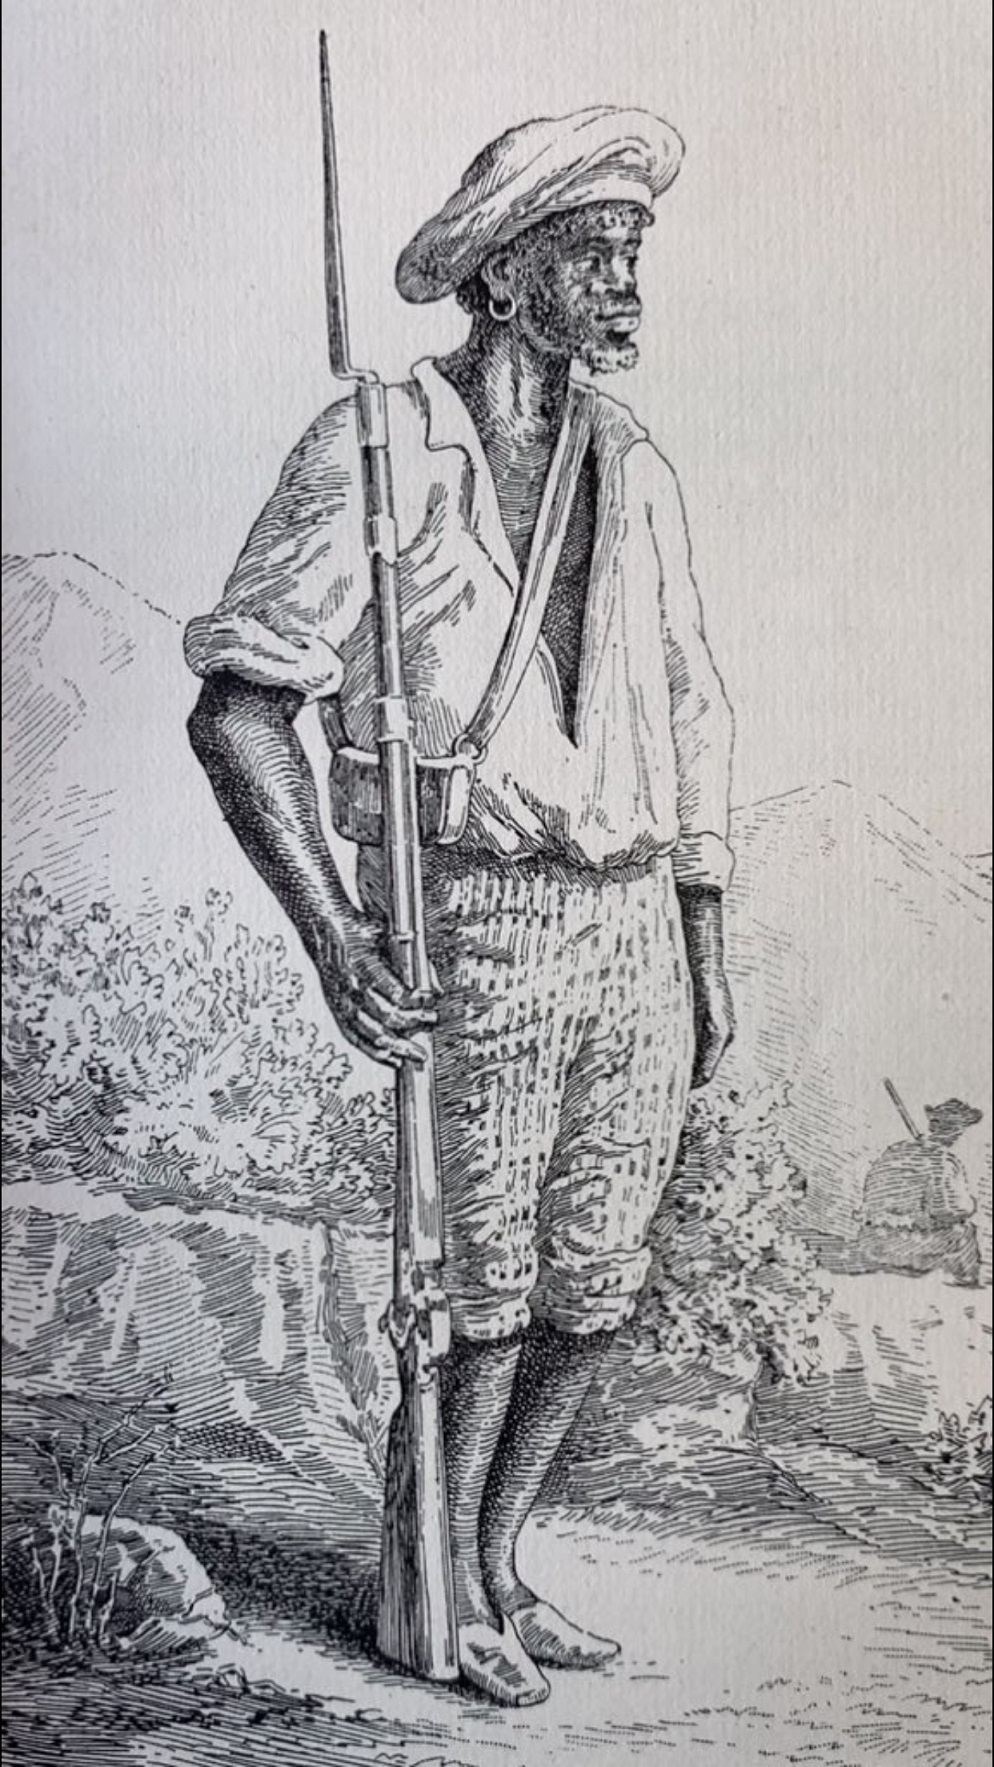 Fue en la Provincia de Caracas que surgió la figura de José Dionisio Cisneros quien comenzó sus incursiones guerrilleras desde las montañas de los Valles del Tuy.